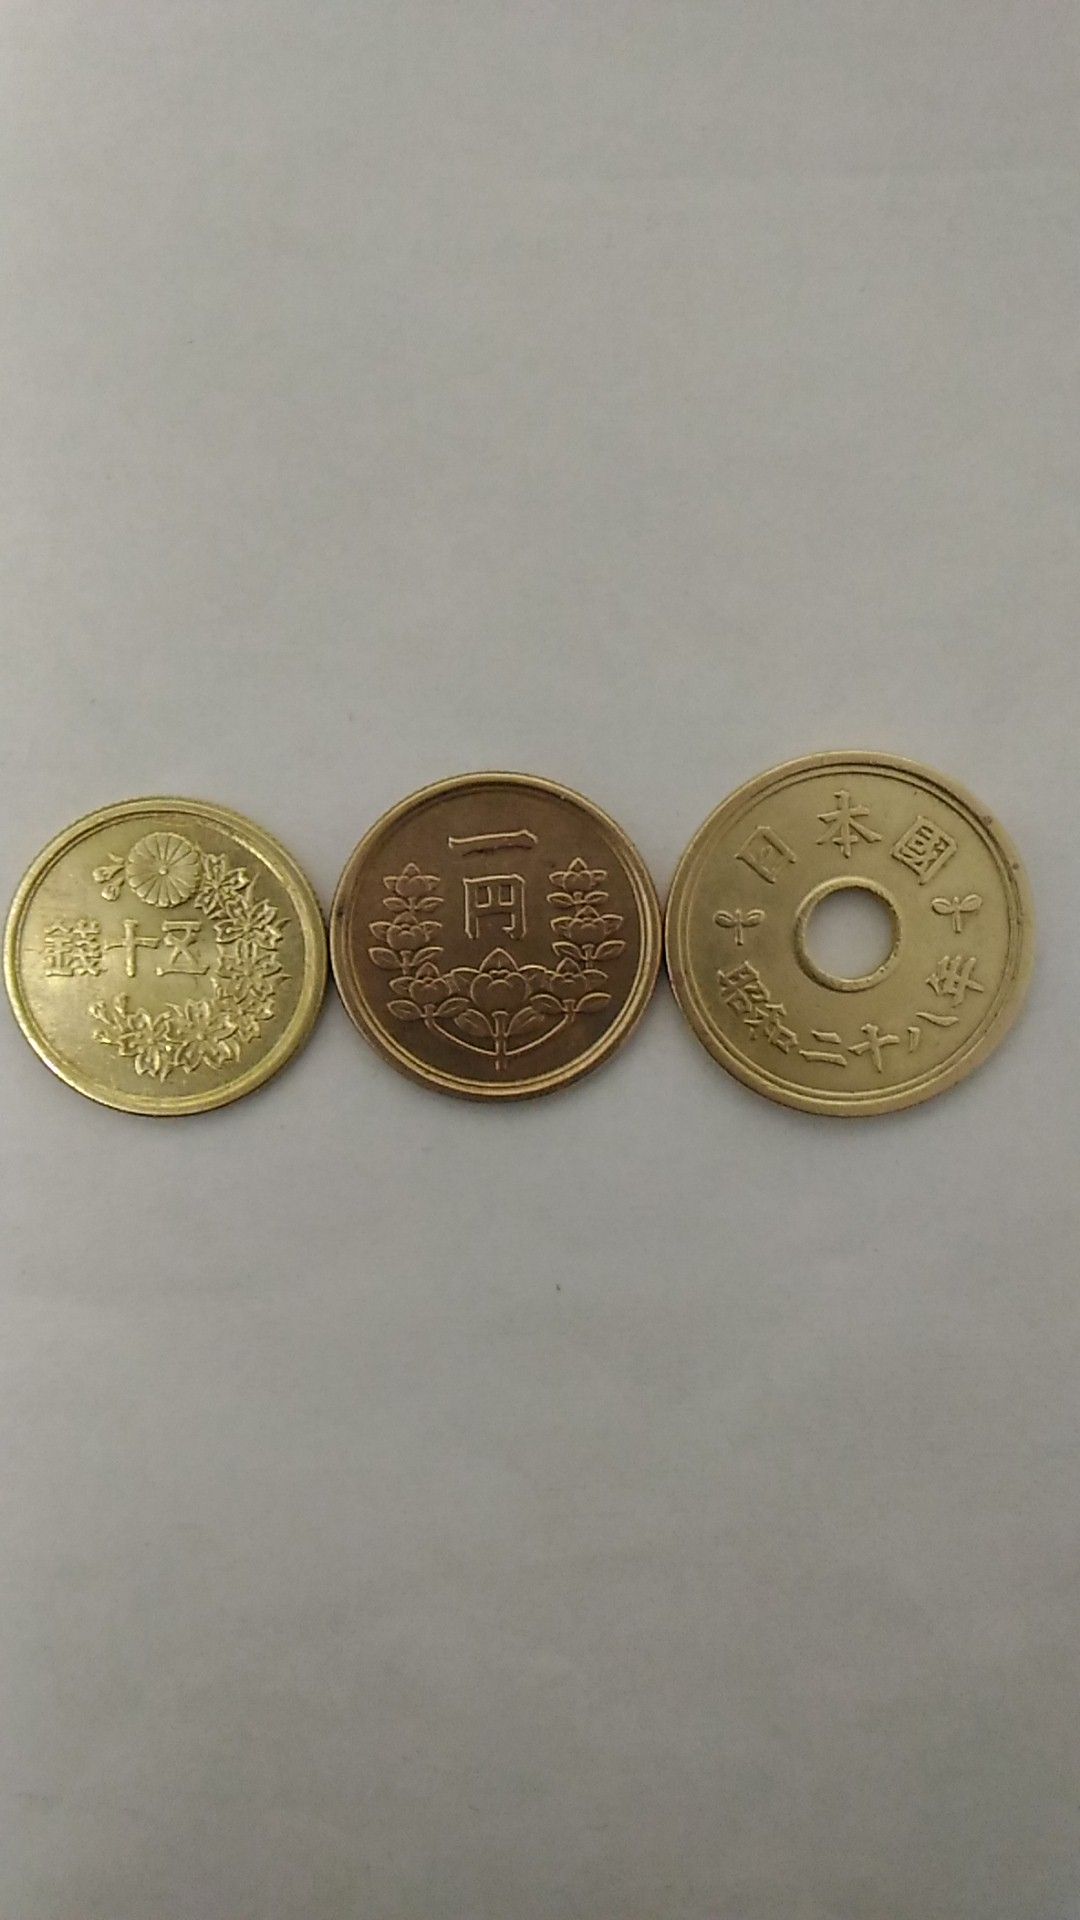 5円玉、50銭玉、旧1円玉などをきれいにピカピカにしてみました。 | アパート暮らしのブログ - 楽天ブログ